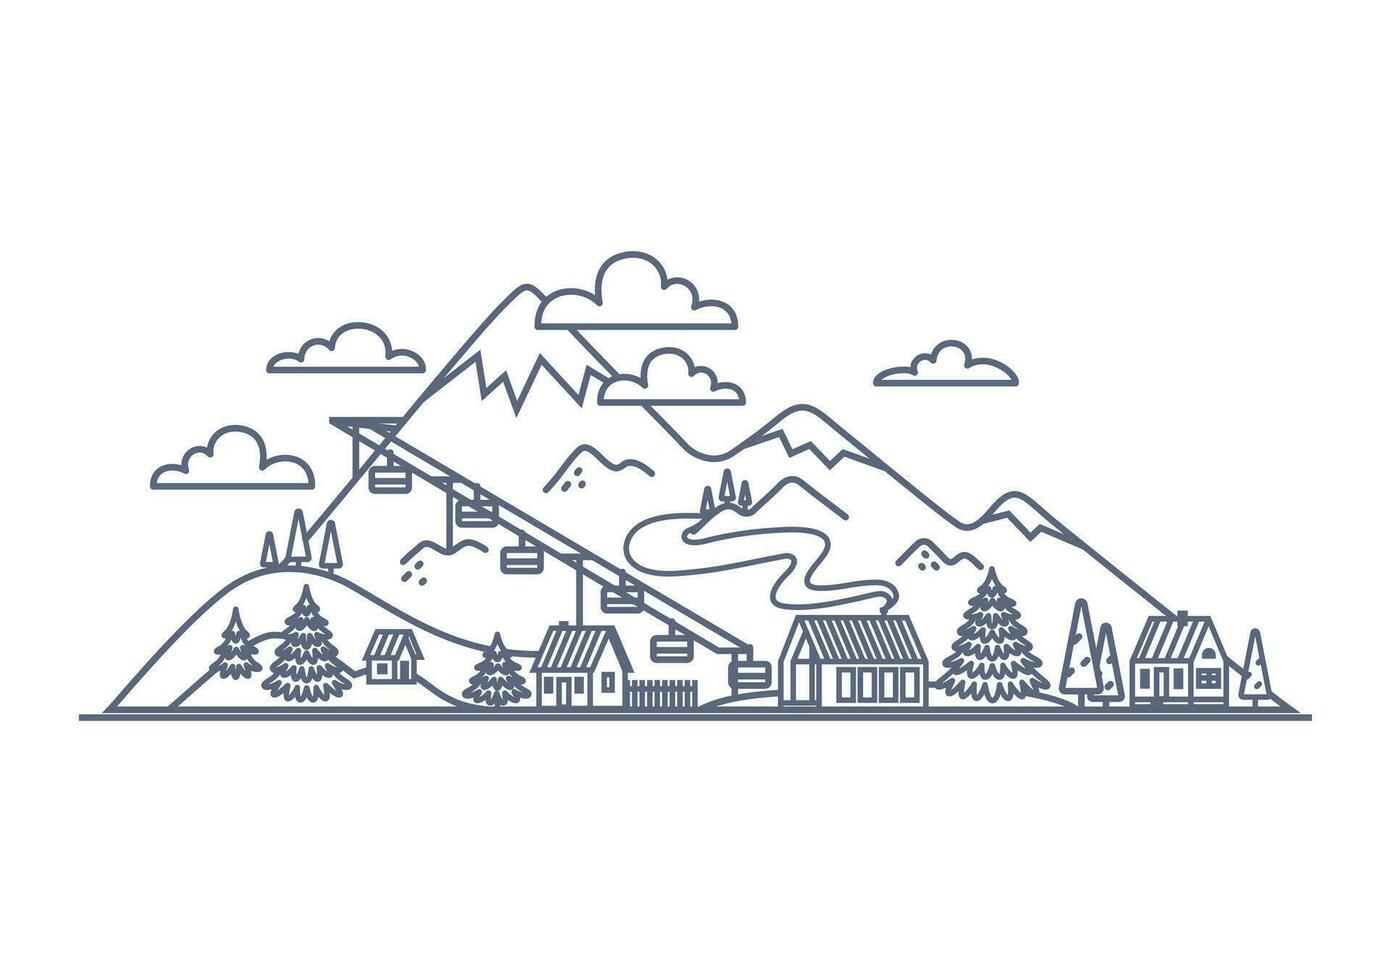 Berg Resort Linie Symbol - - Berg Landschaft mit Dorf Gebäude einfach linear Illustration auf Weiß Hintergrund. Vektor Illustration.